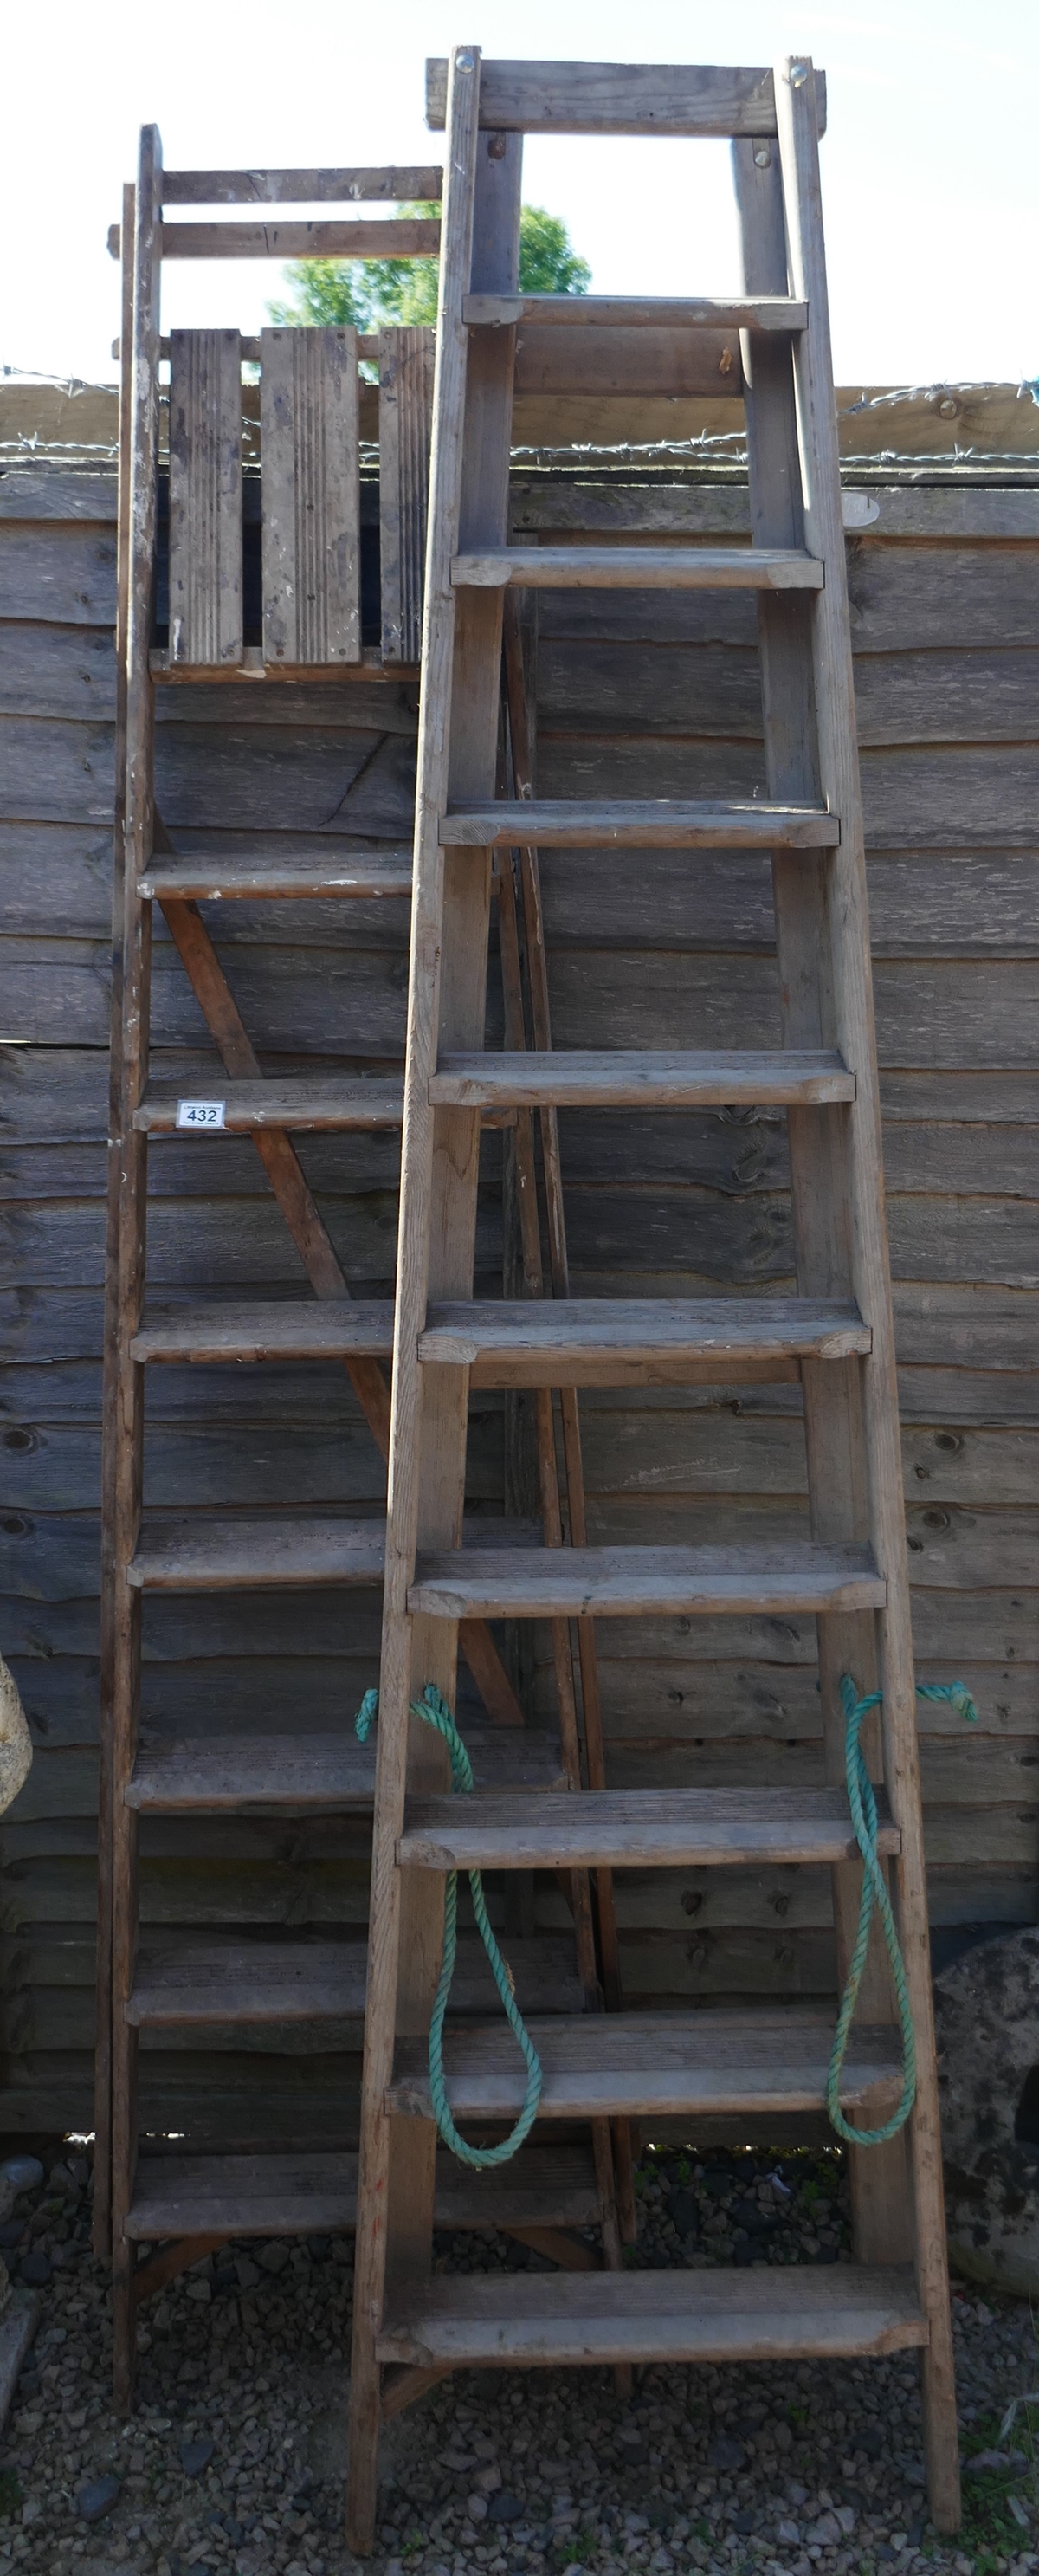 2 sets of vintage wooden step ladders